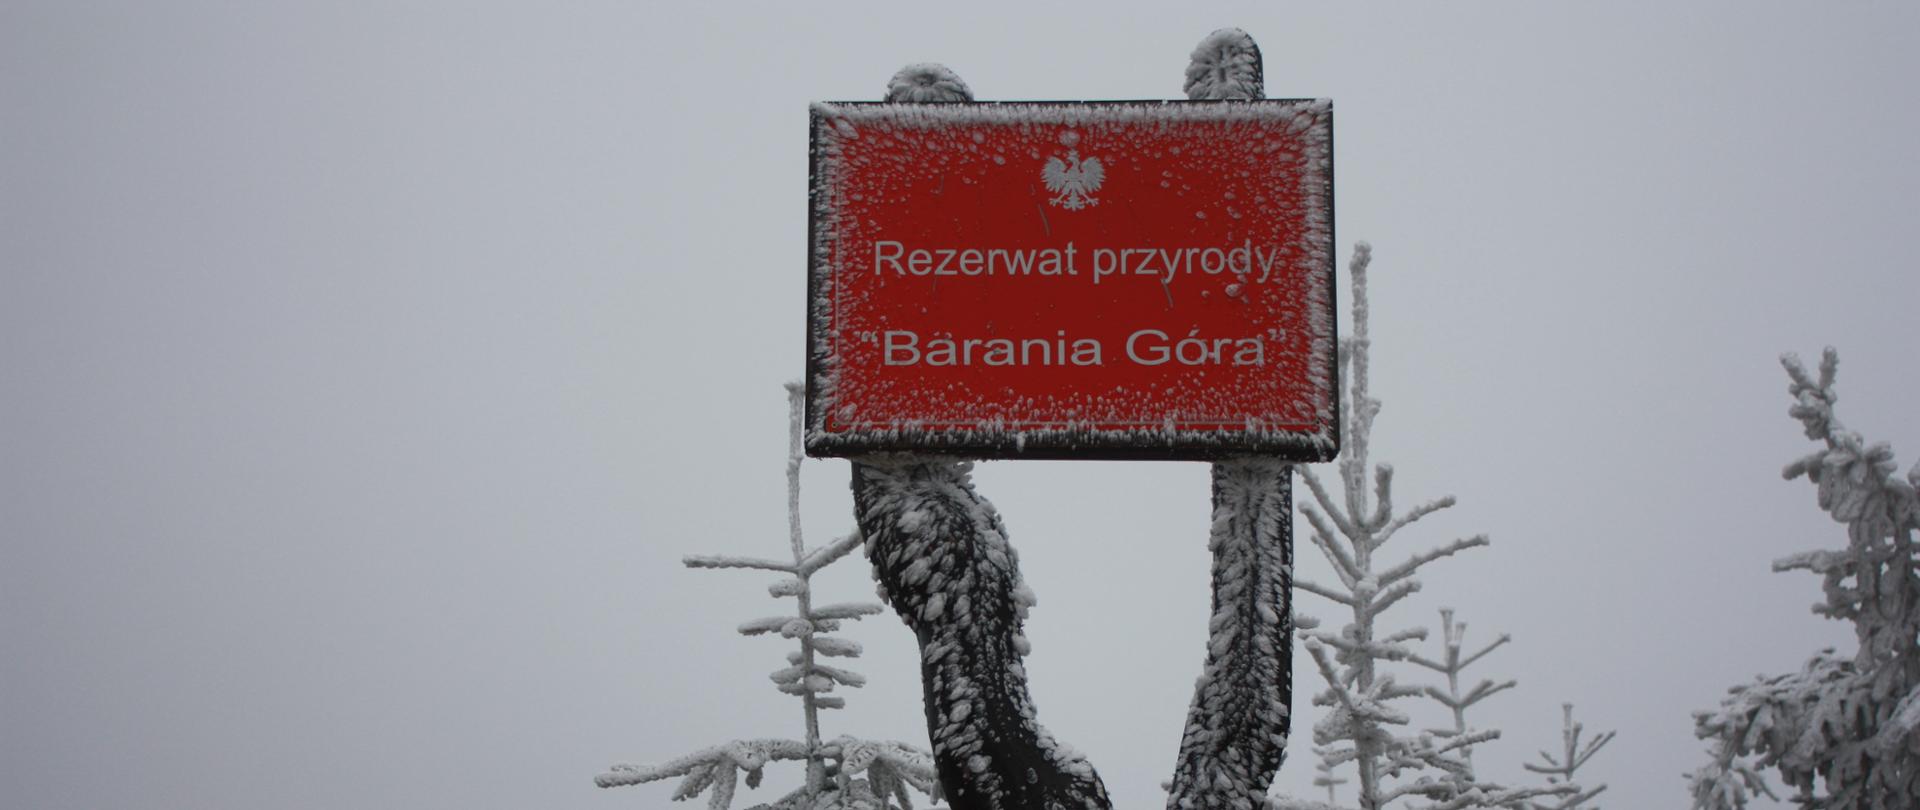 Zdjęcie wykonane zimą, przedstawia lekko ośnieżoną, czerwoną tabliczkę z napisem Rezerwat przyrody "Barania Góra", w tle ośnieżone, niewielkie świerki 